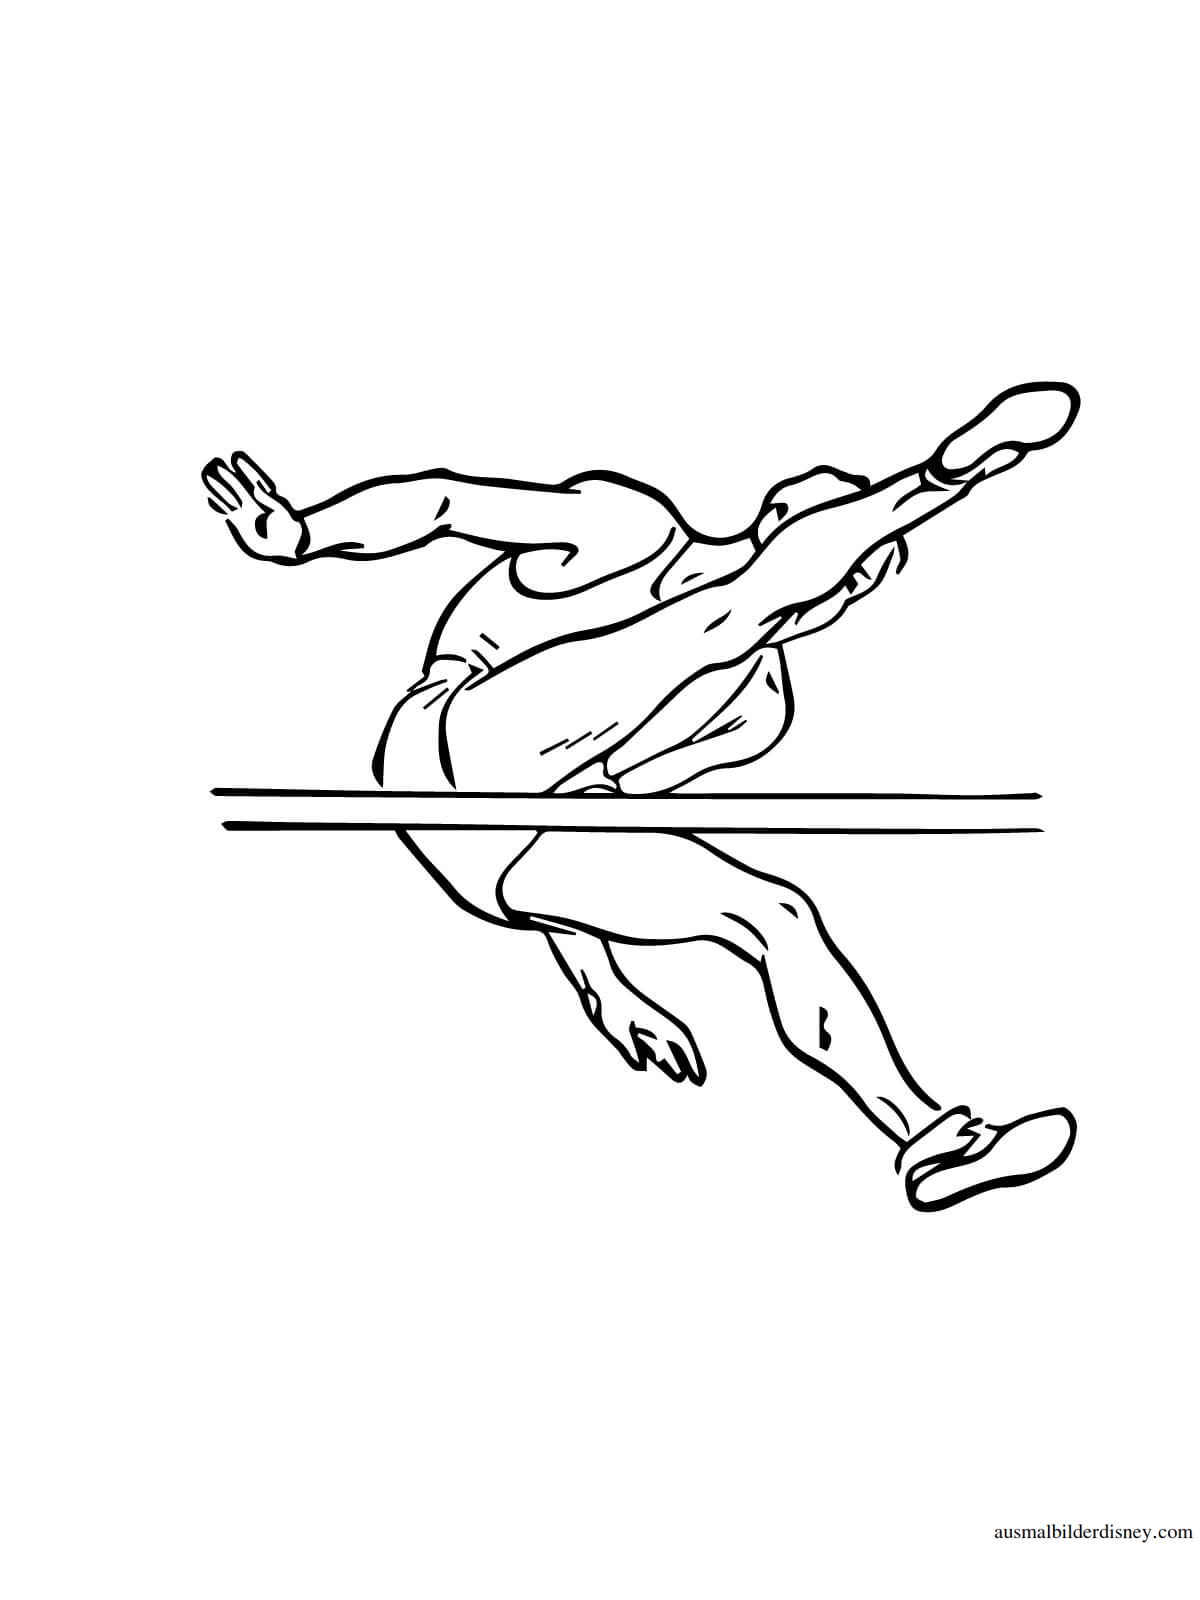 Рисунок в длину. Легкая атлетика раскраска для детей. Прыжок раскраска. Прыжки в высоту. Рисунок на тему легкая атлетика.